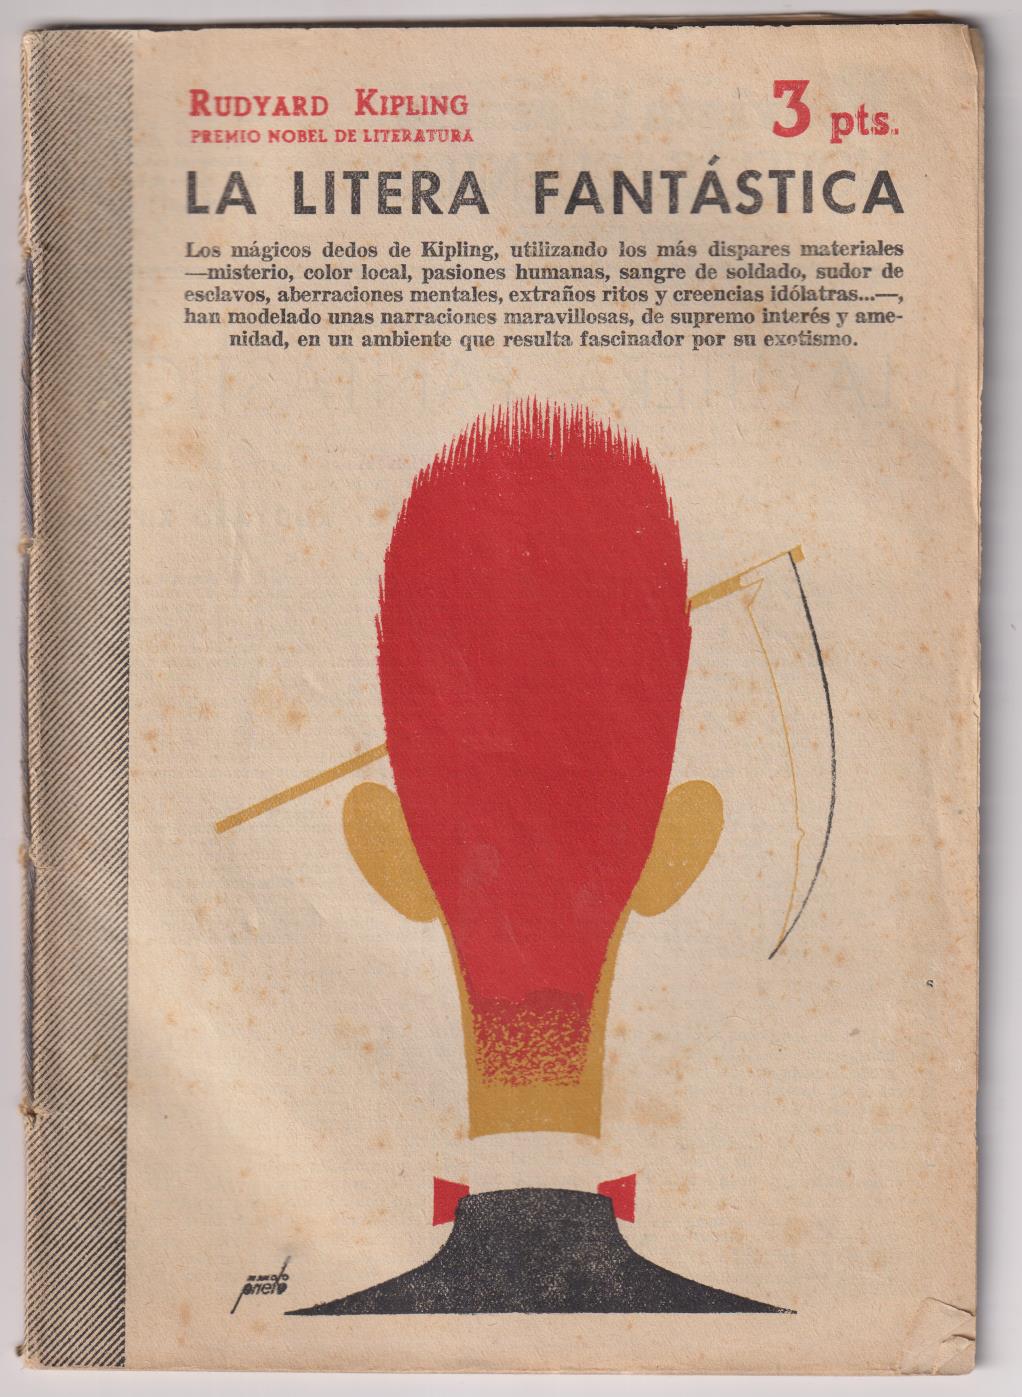 Revista Literaria Novelas y cuentos nº 1292. La Litera Fantástica por Rudyard Kipling, 1959